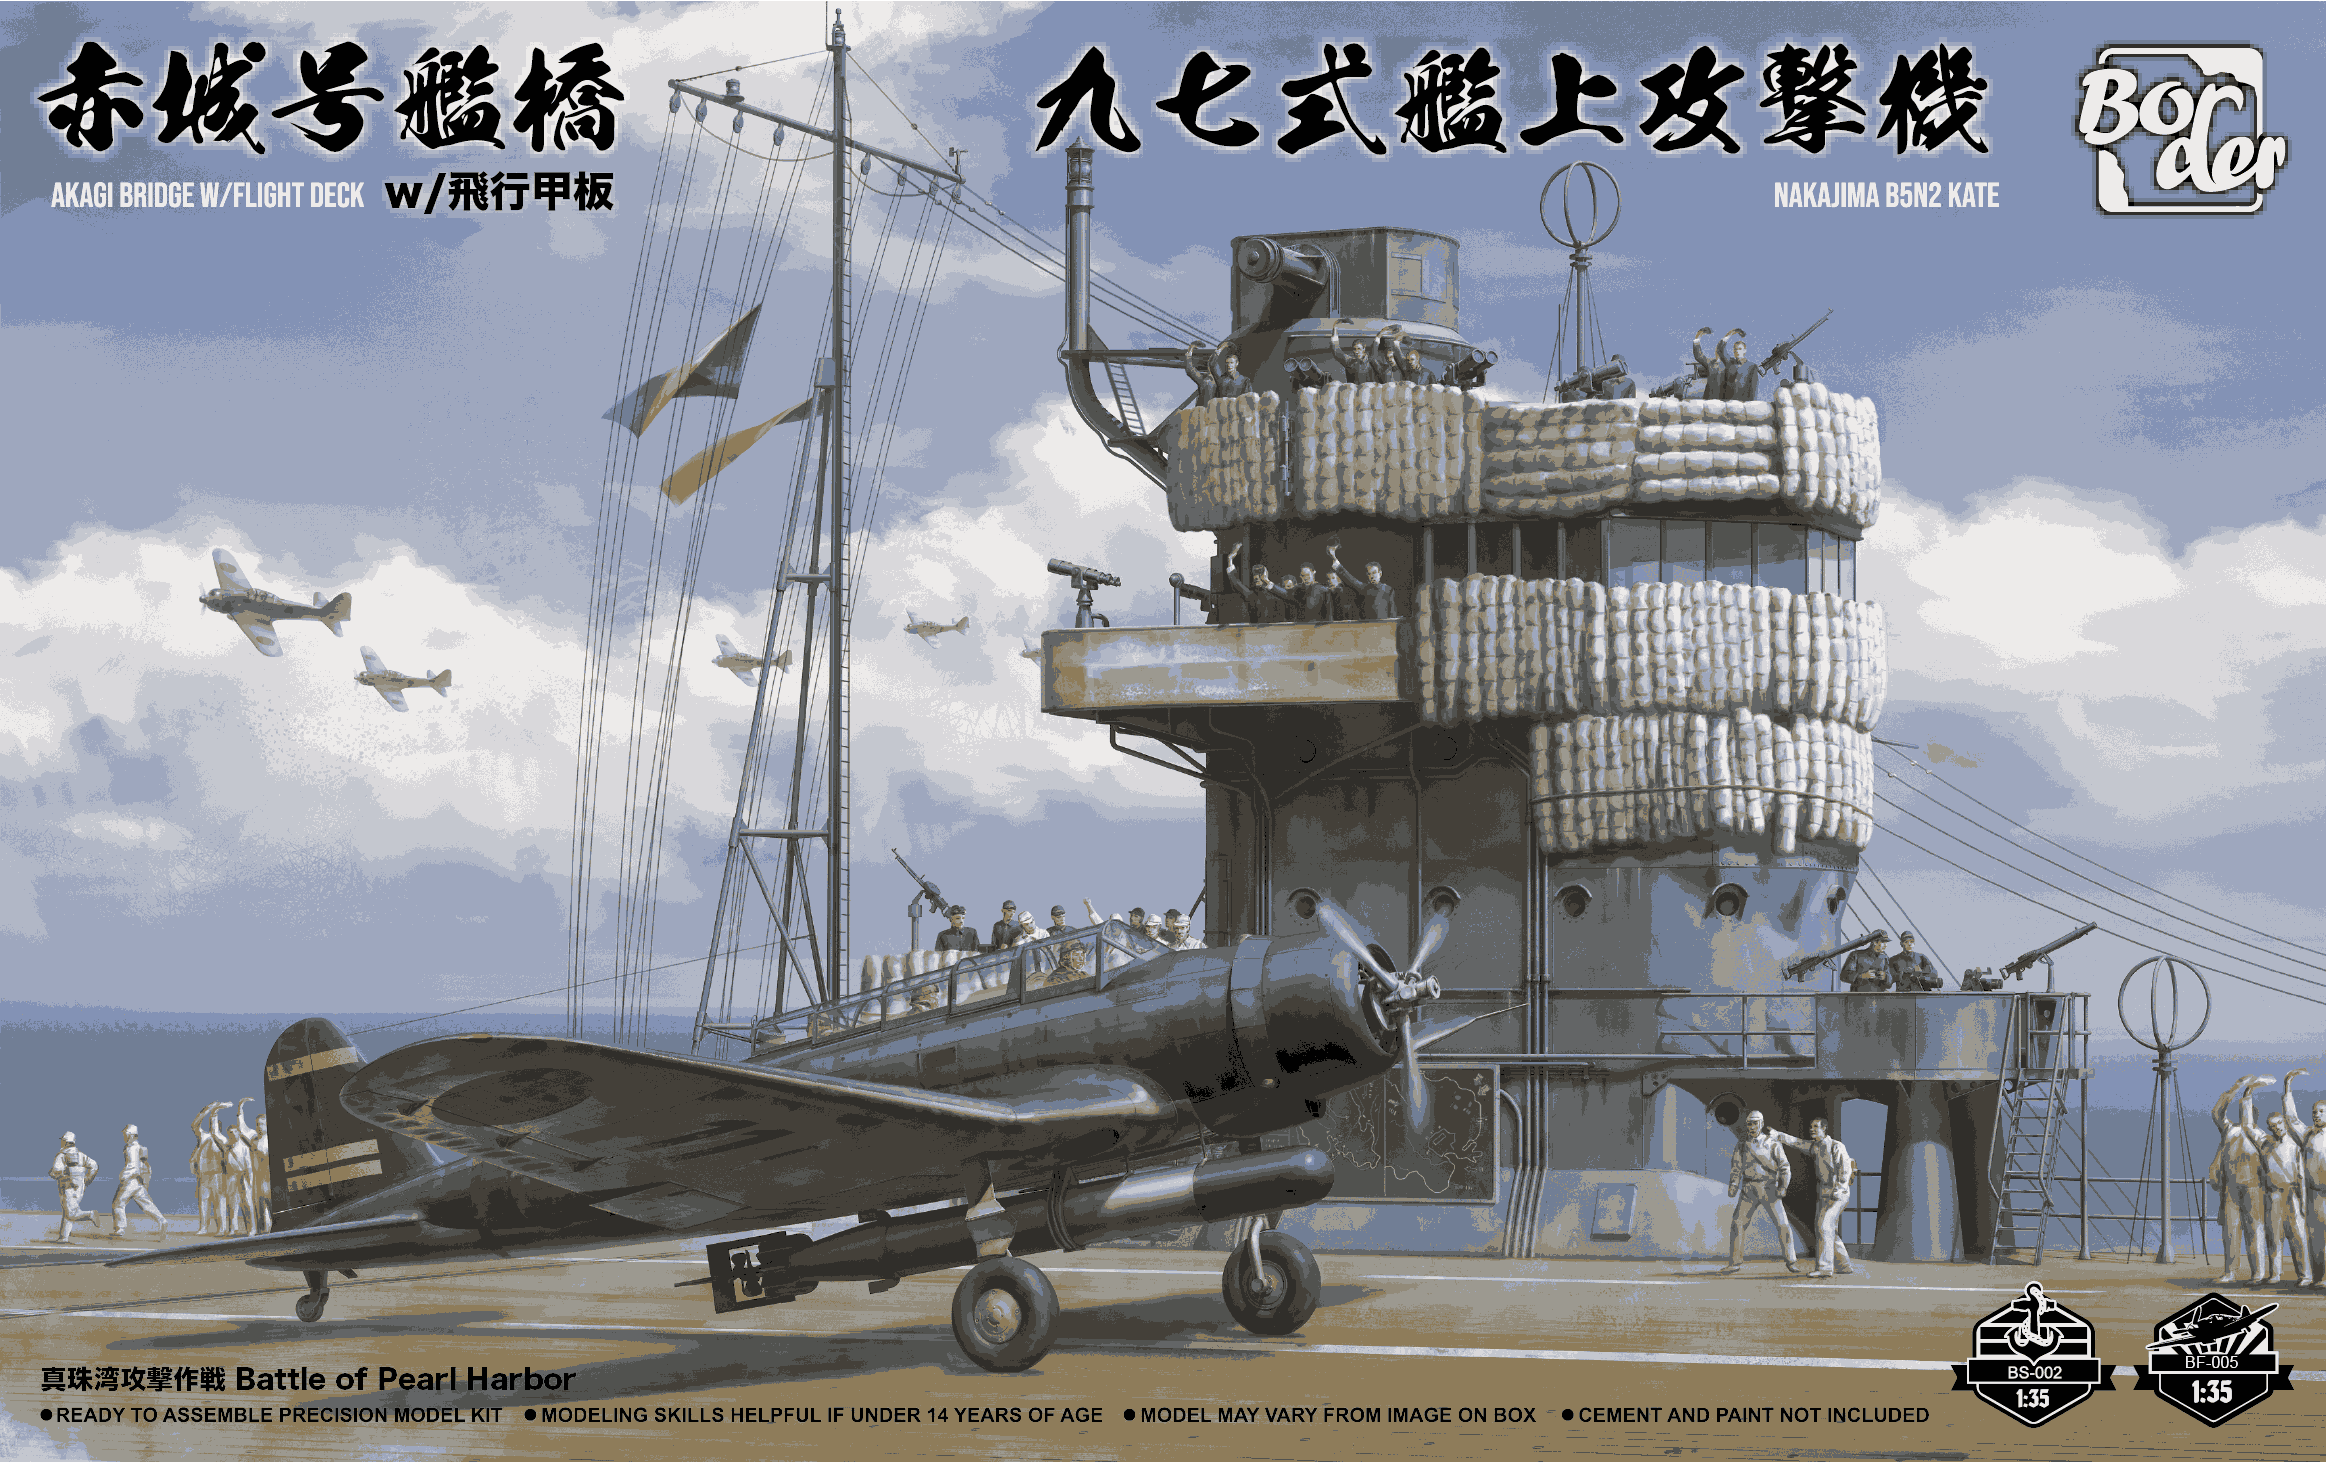 ボーダーモデル 1/35 日本海軍 空母 赤城 艦橋 w/飛行甲板 + 九七式艦上攻撃機 (BSF001) プラモデル